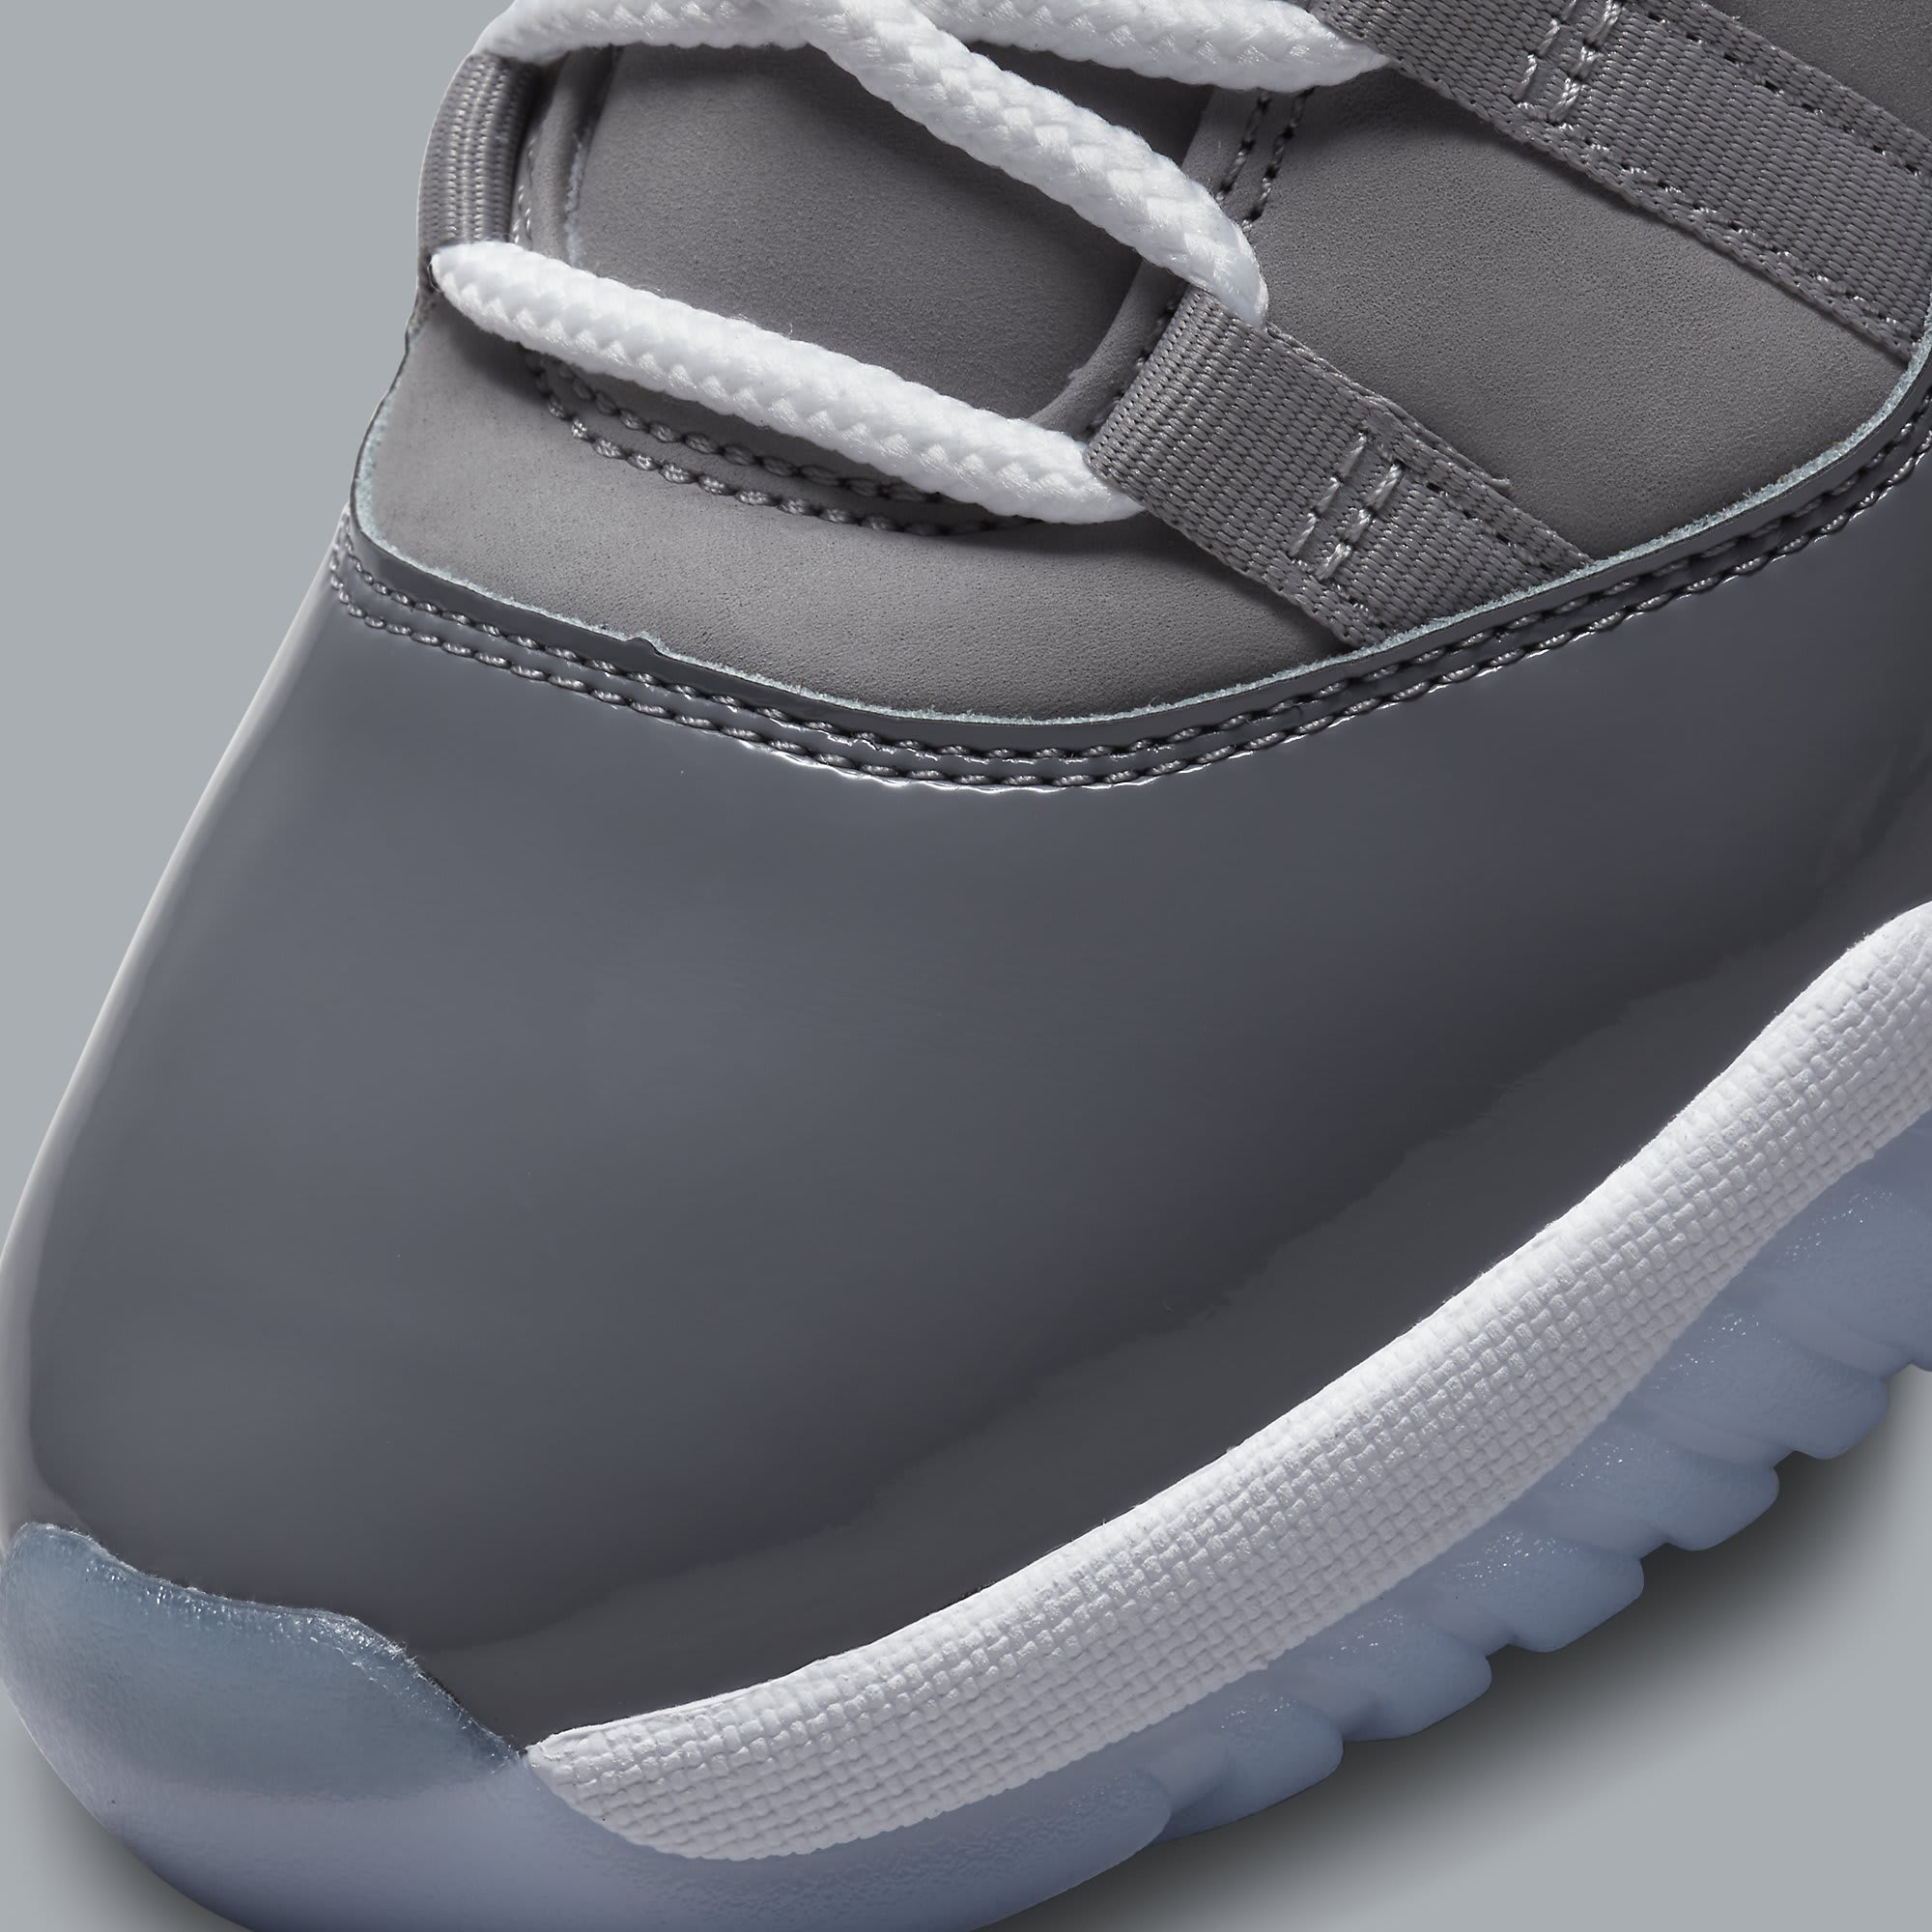 Air Jordan 11 XI Cool Grey Release Date CT8012-005 Toe Detail